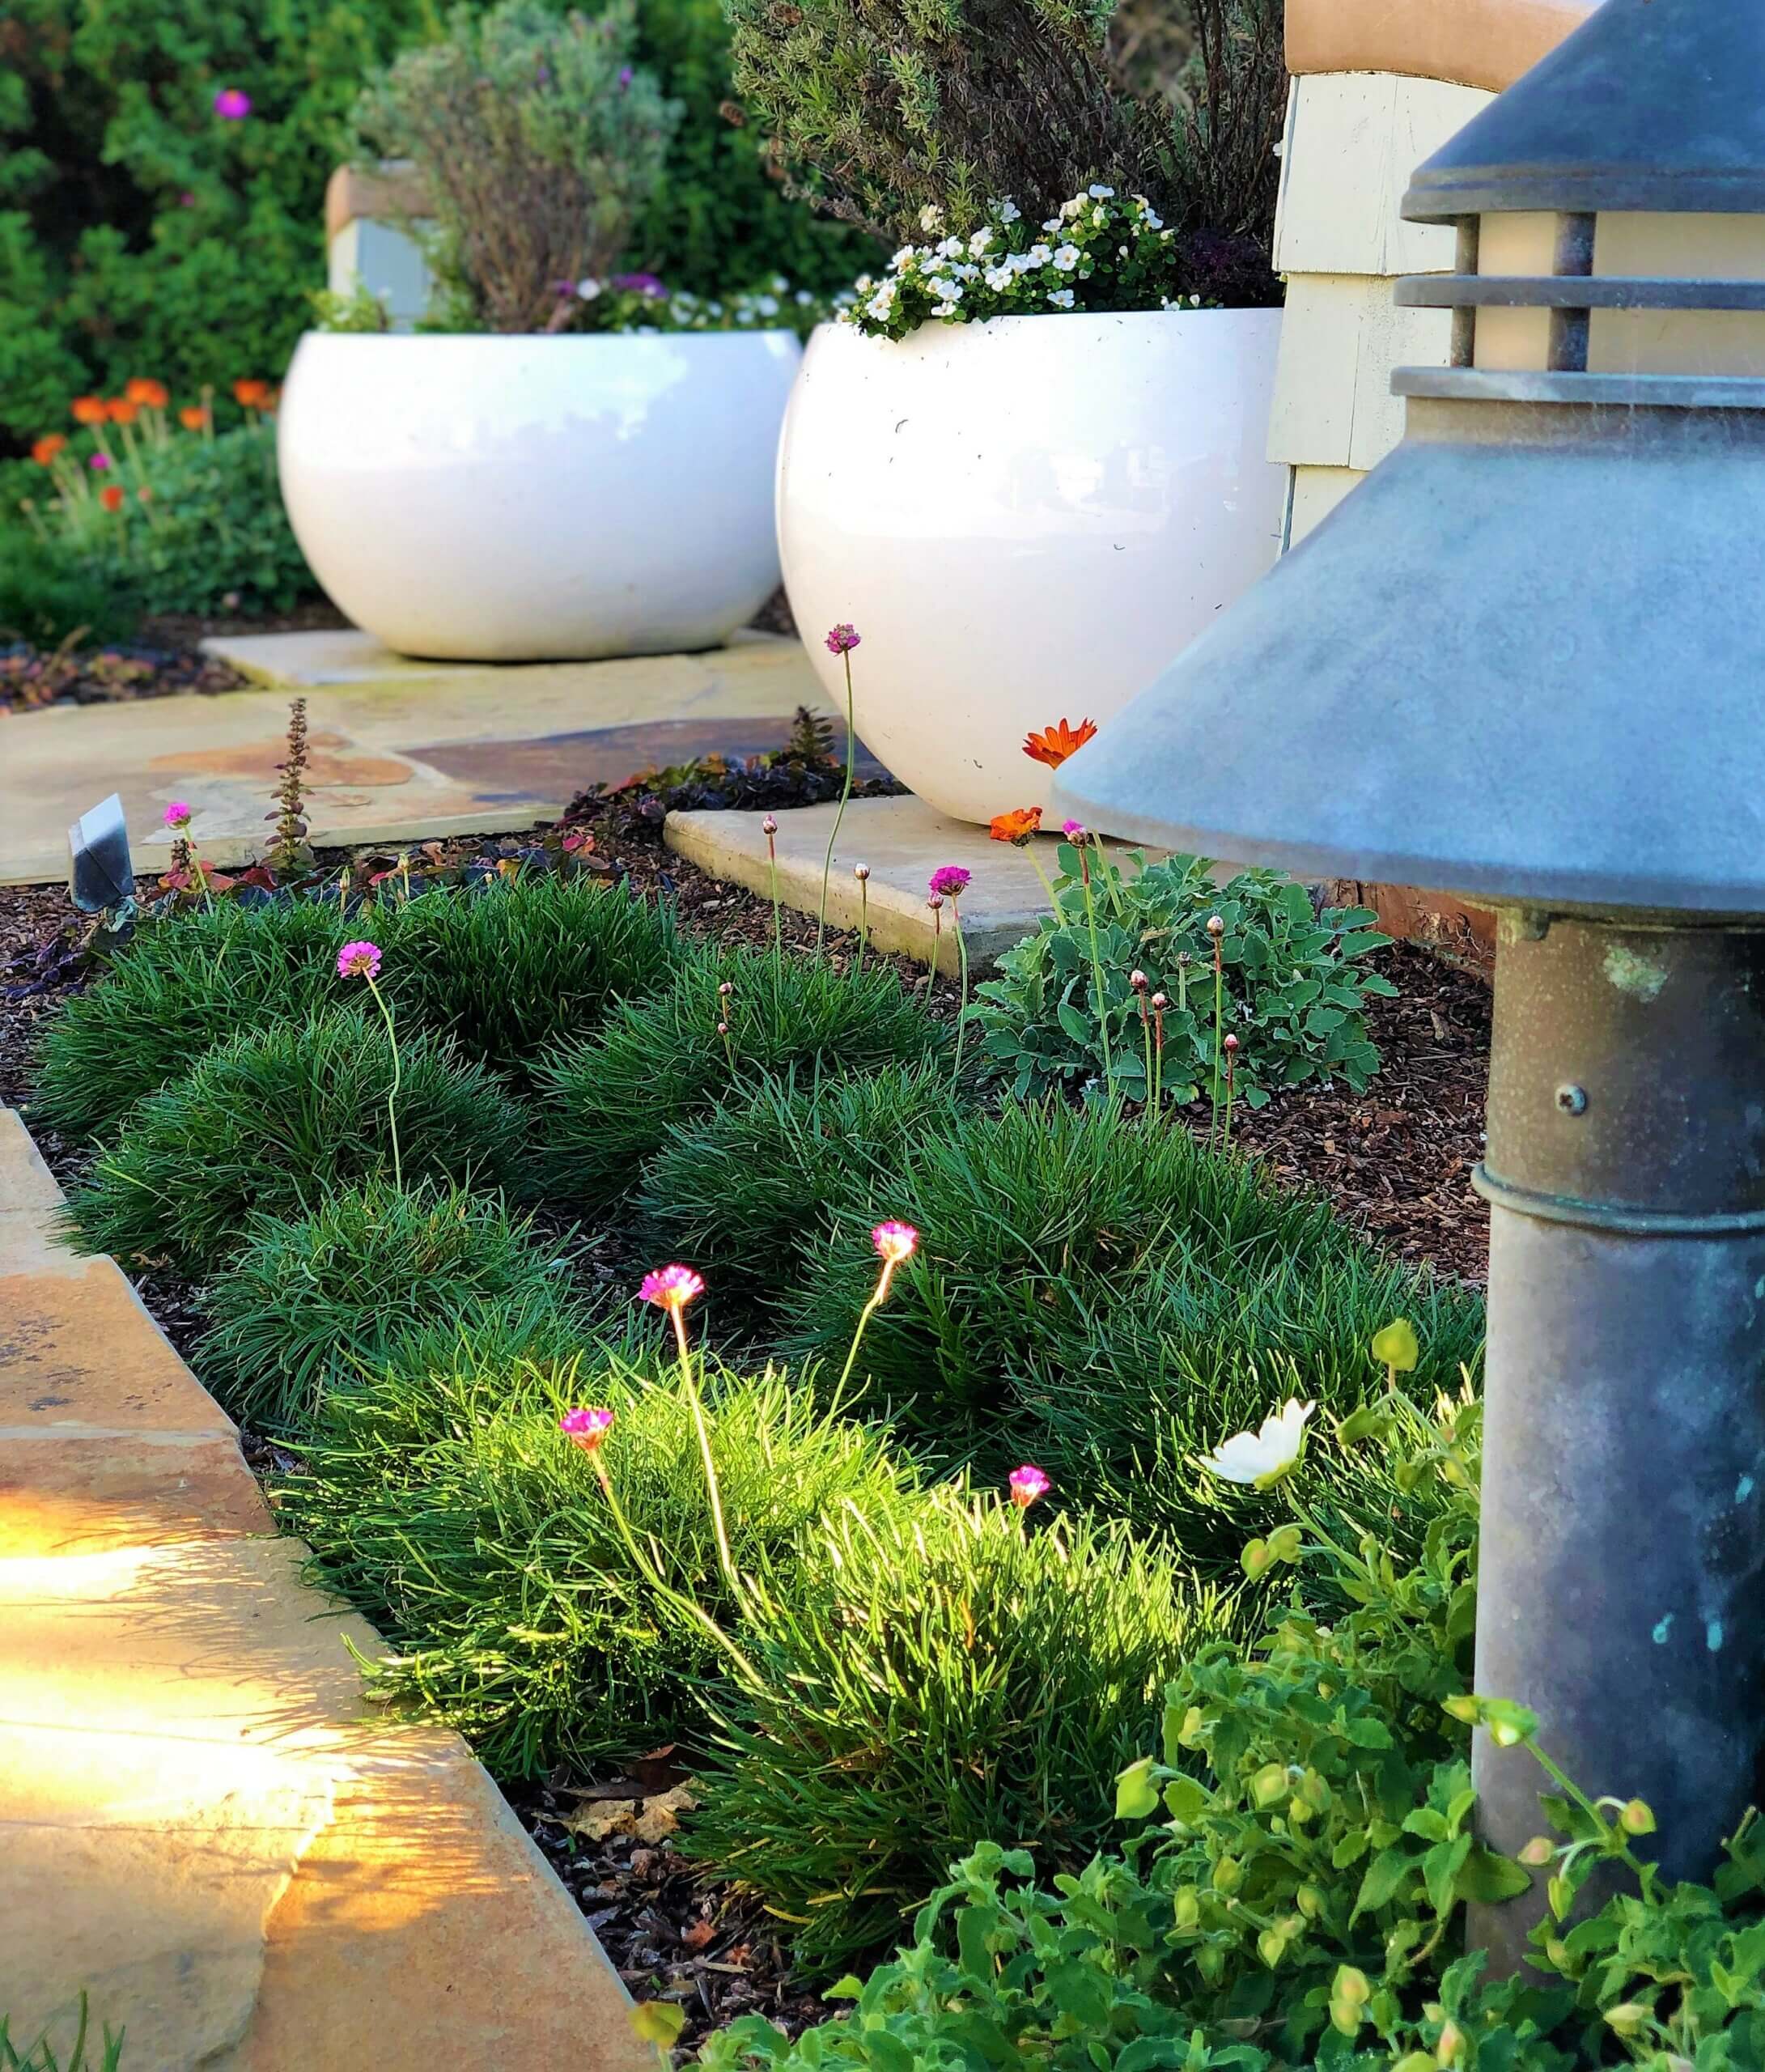 Pair of white potted planters next to metal garden lantern